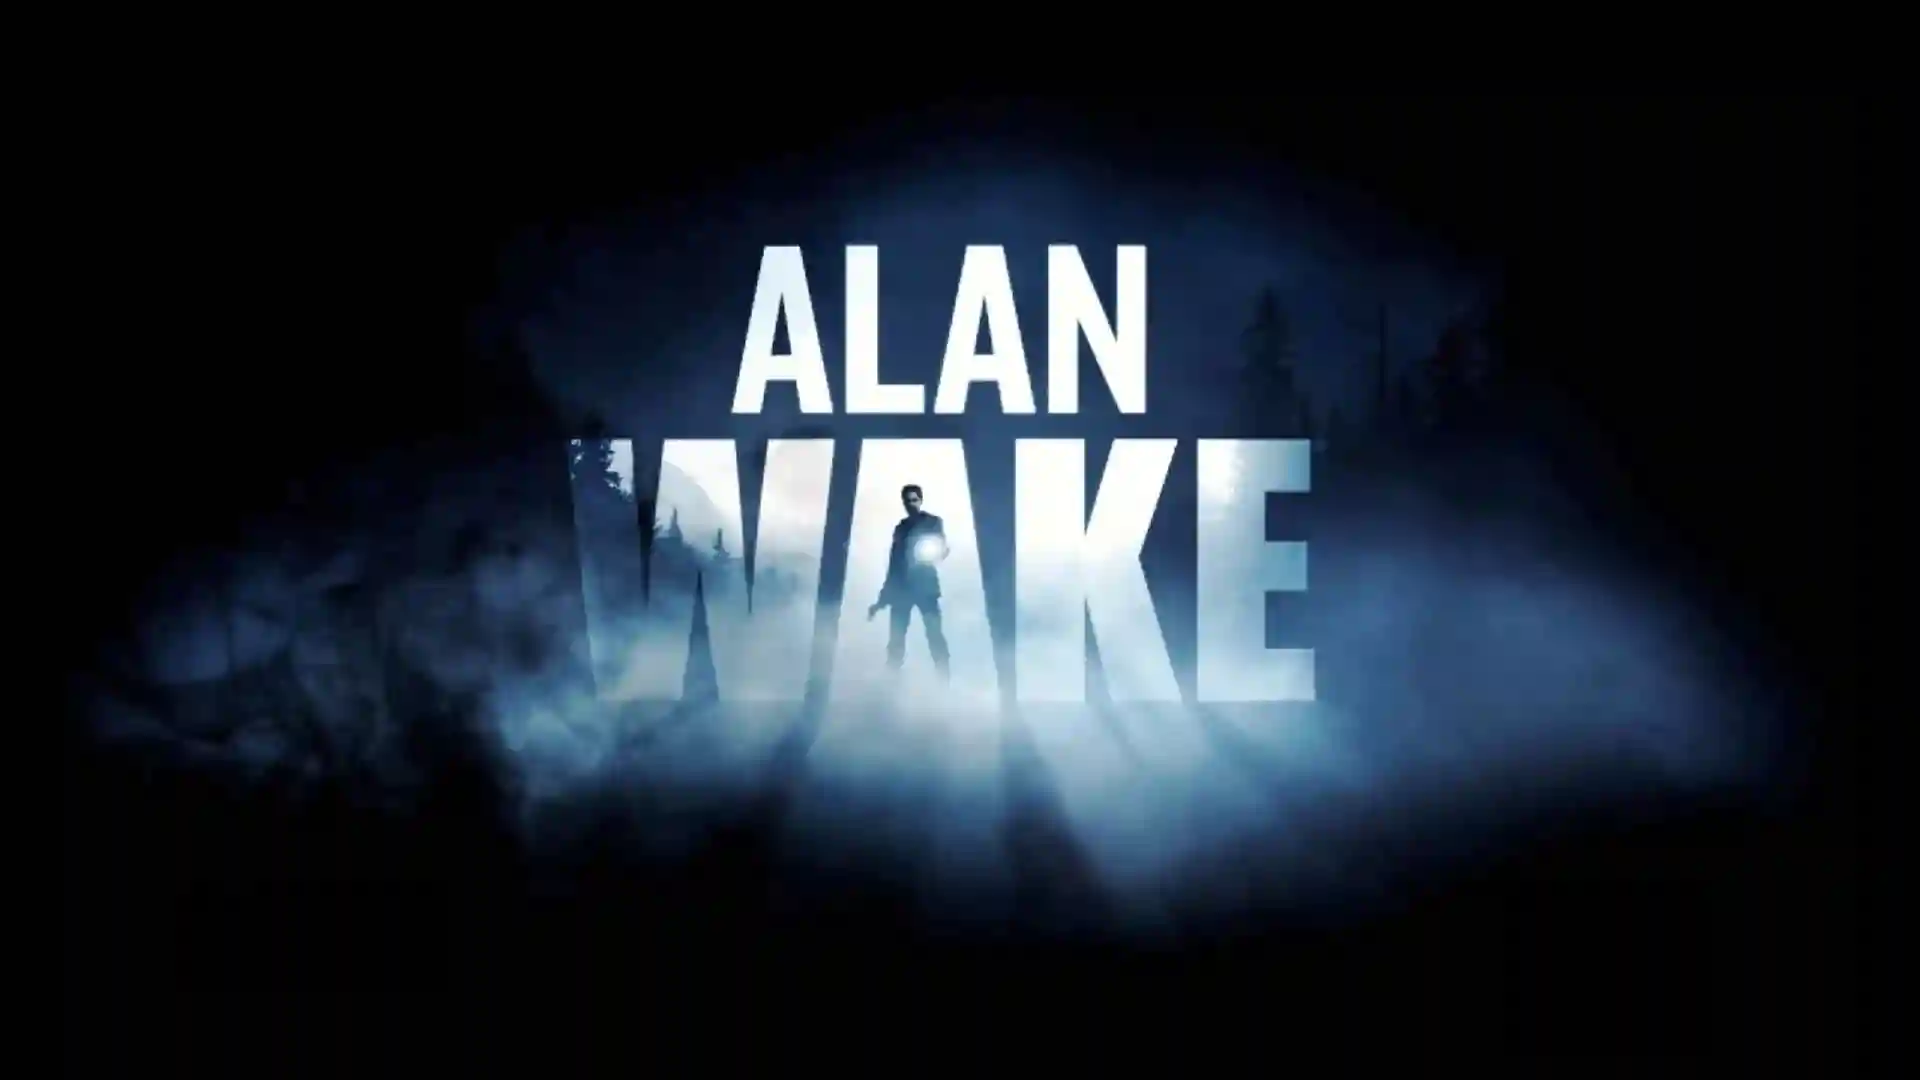 Alan Wakes